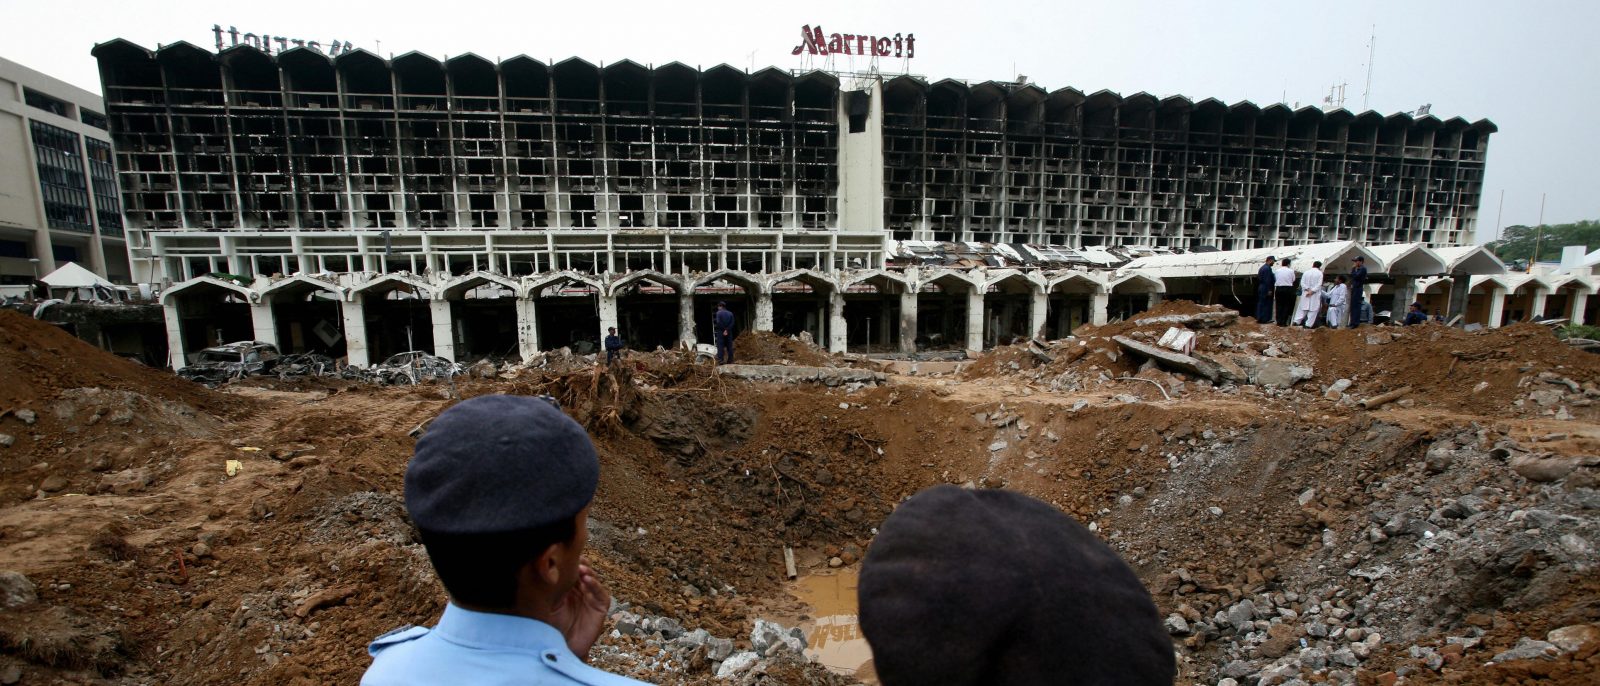 destruction at Marriott hotel